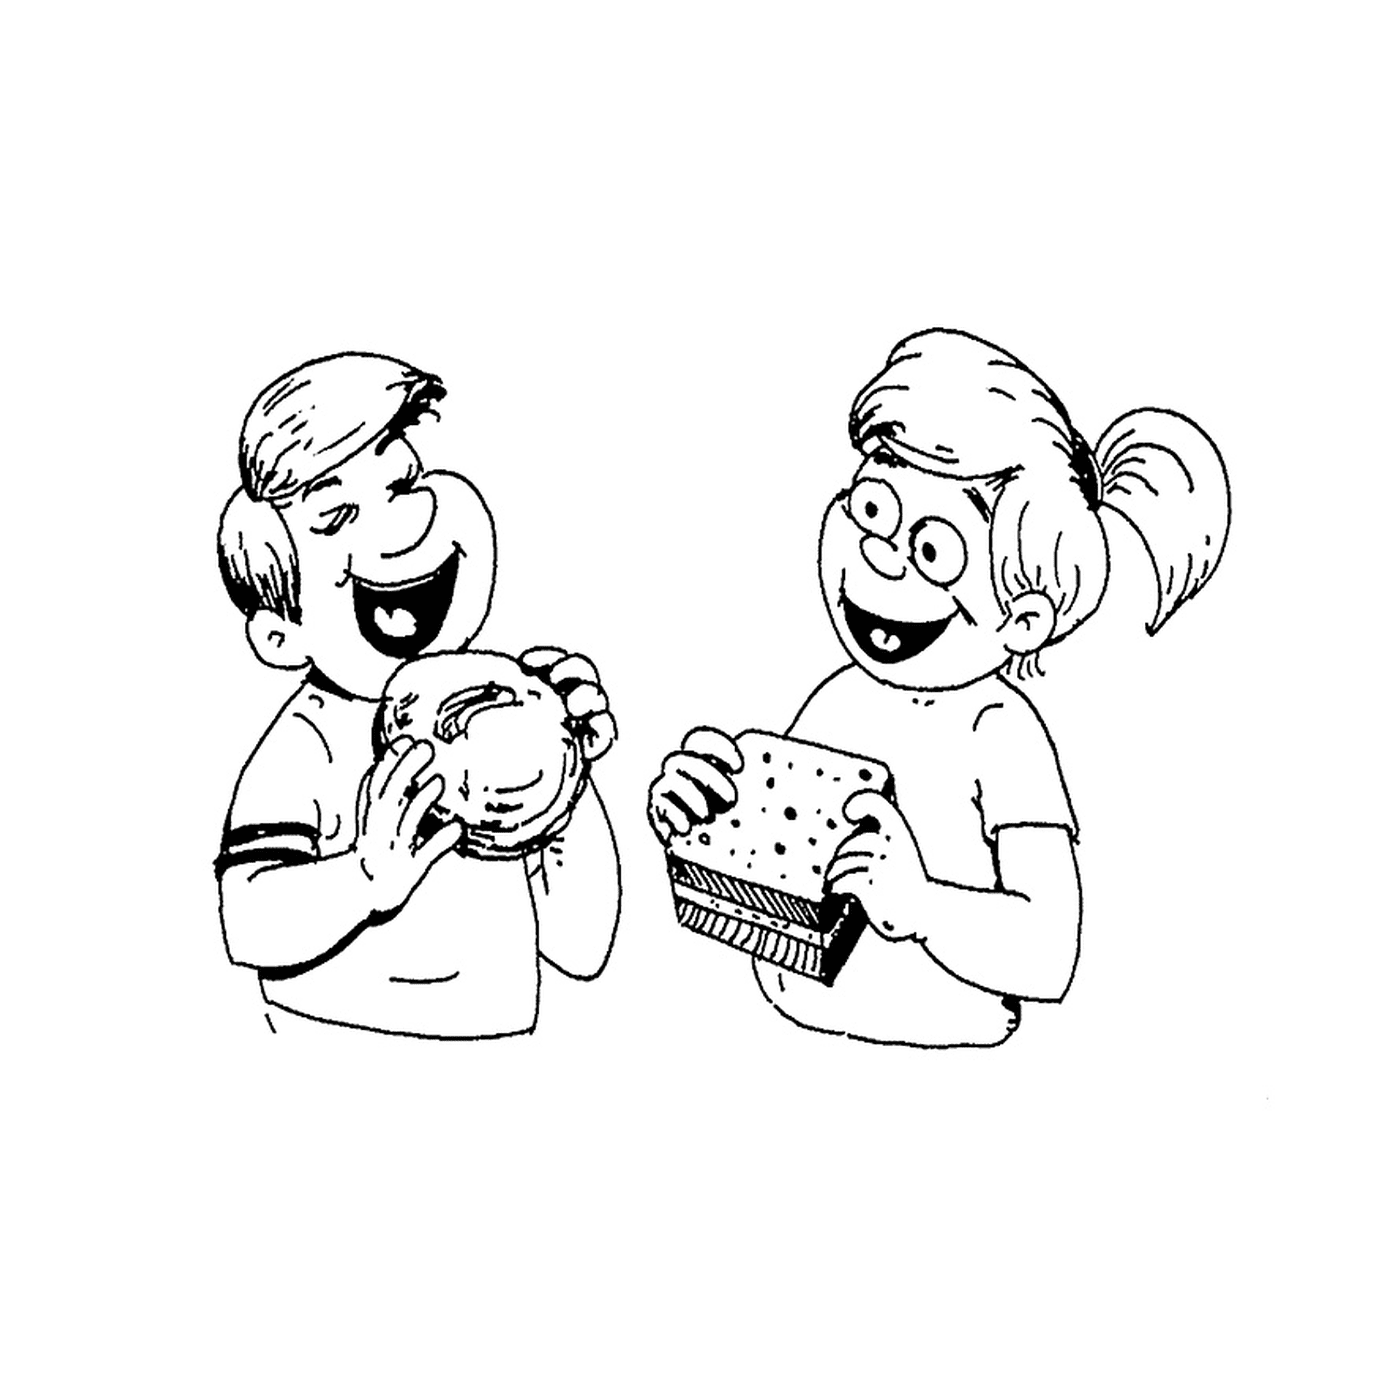  一个男孩和一个女孩吃一个零食三明治 